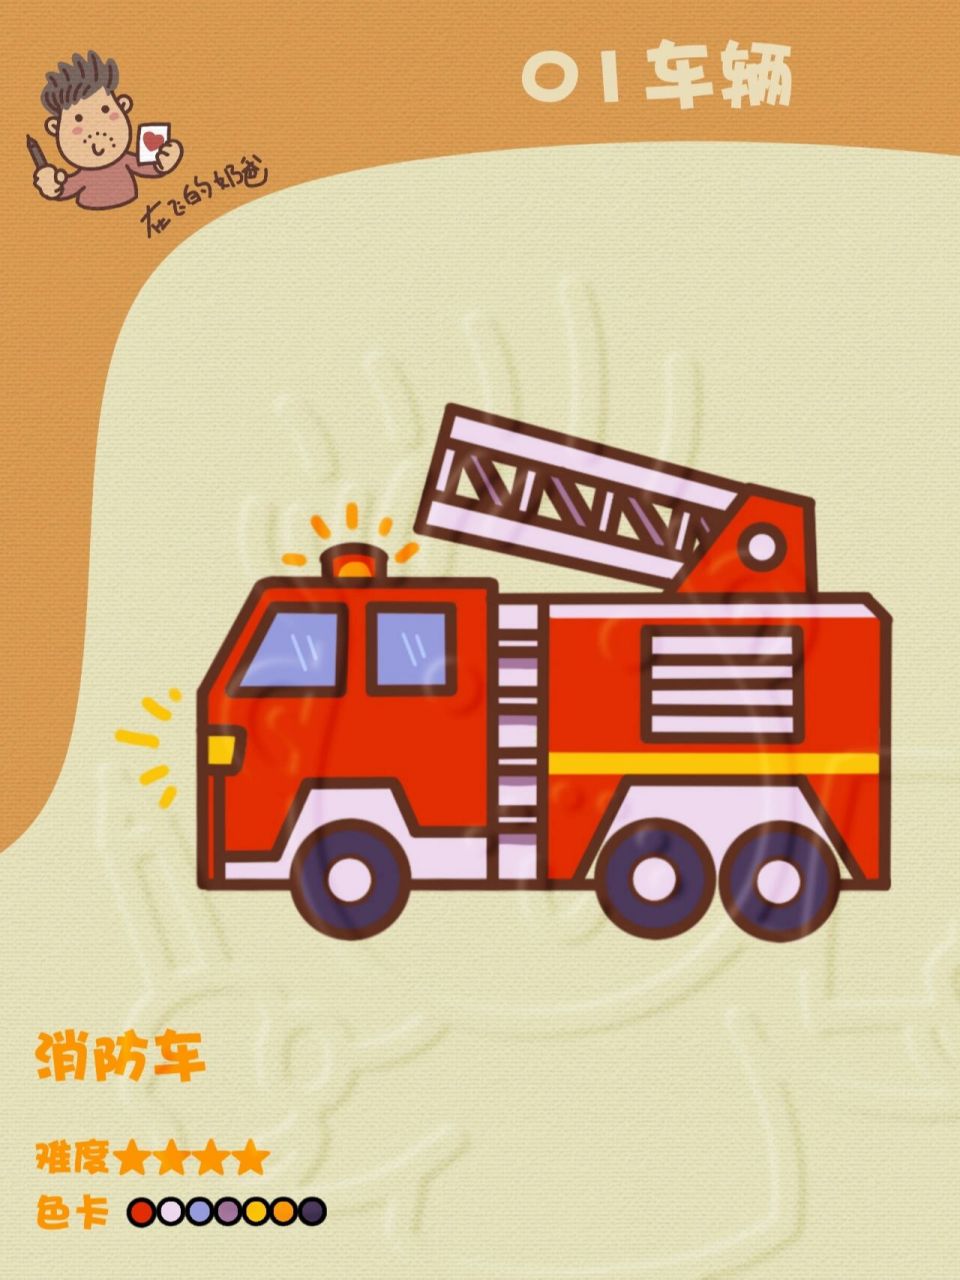 消防车简笔画救火彩色图片